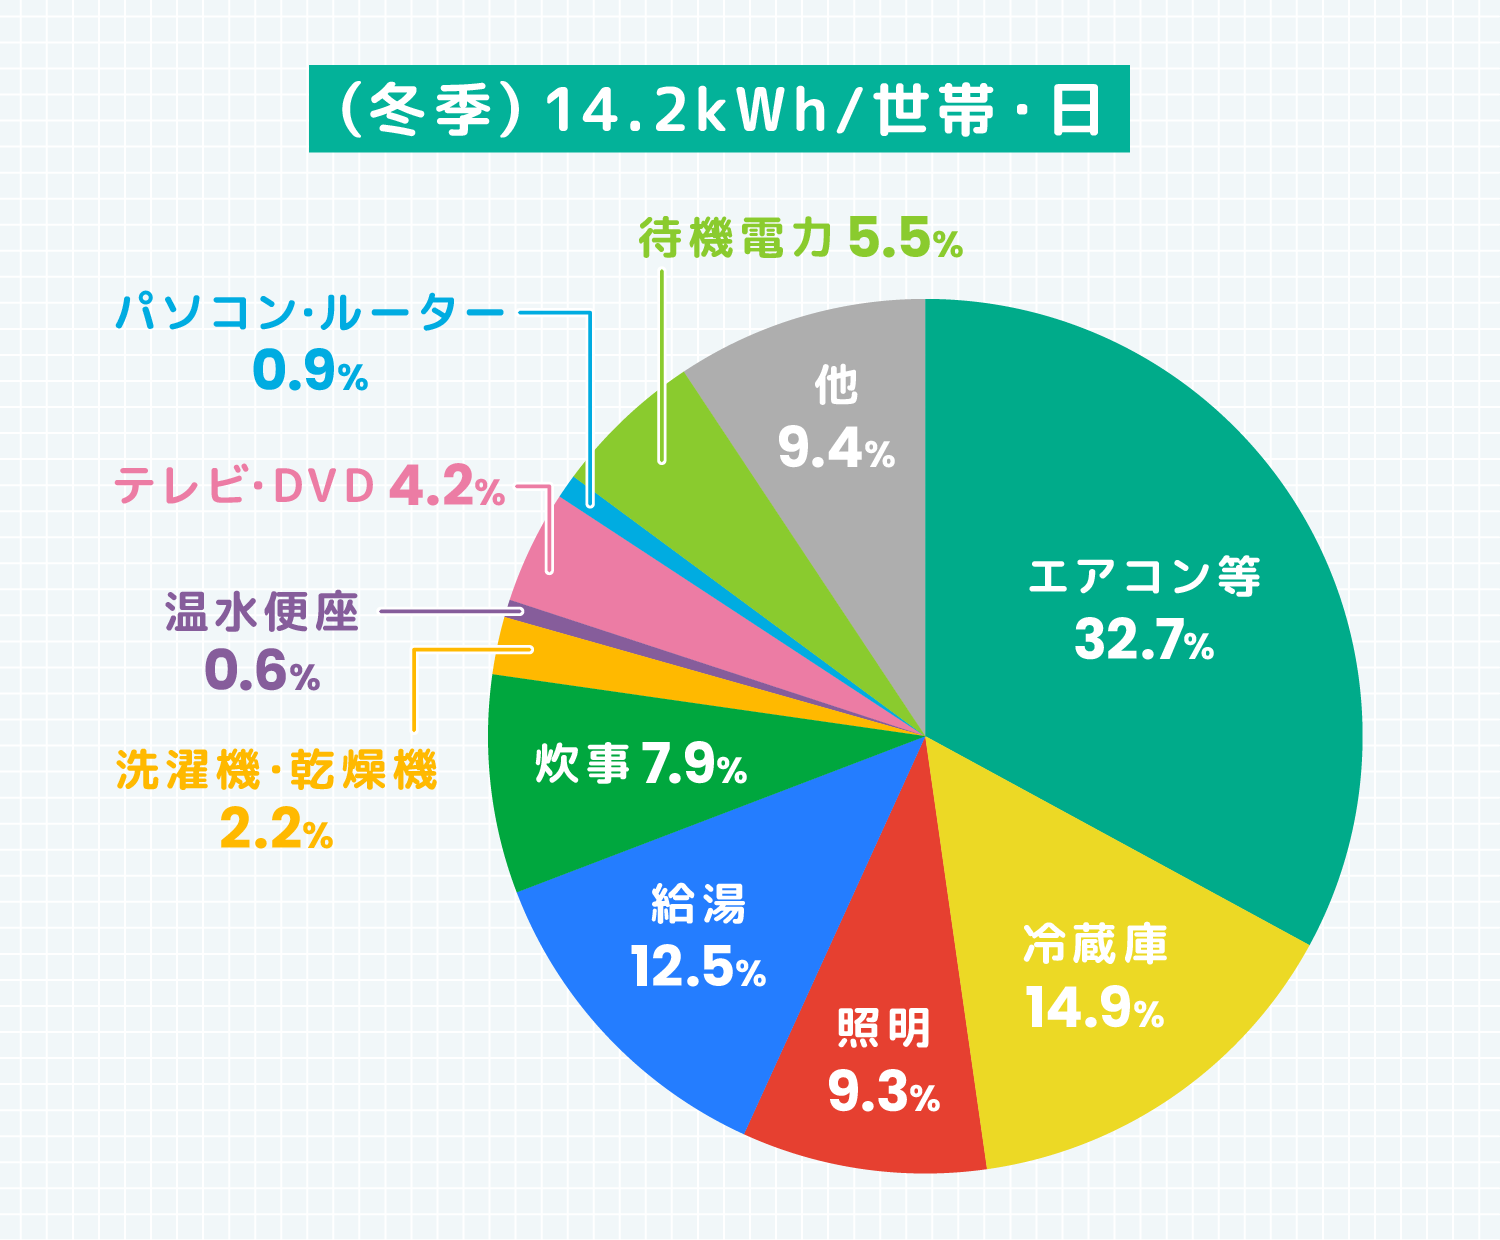 (冬季)14.2kWh/世帯・日 エアコン等32.7％ 冷蔵庫14.9％ 照明9.3％ 給湯12.5％ 炊事7.9％ 洗濯機・乾燥機2.2％ 温水便座0.6％ テレビ・DVD4.2％ パソコン・ルーター0.9％ 待機電力5.5％ 他9.4％